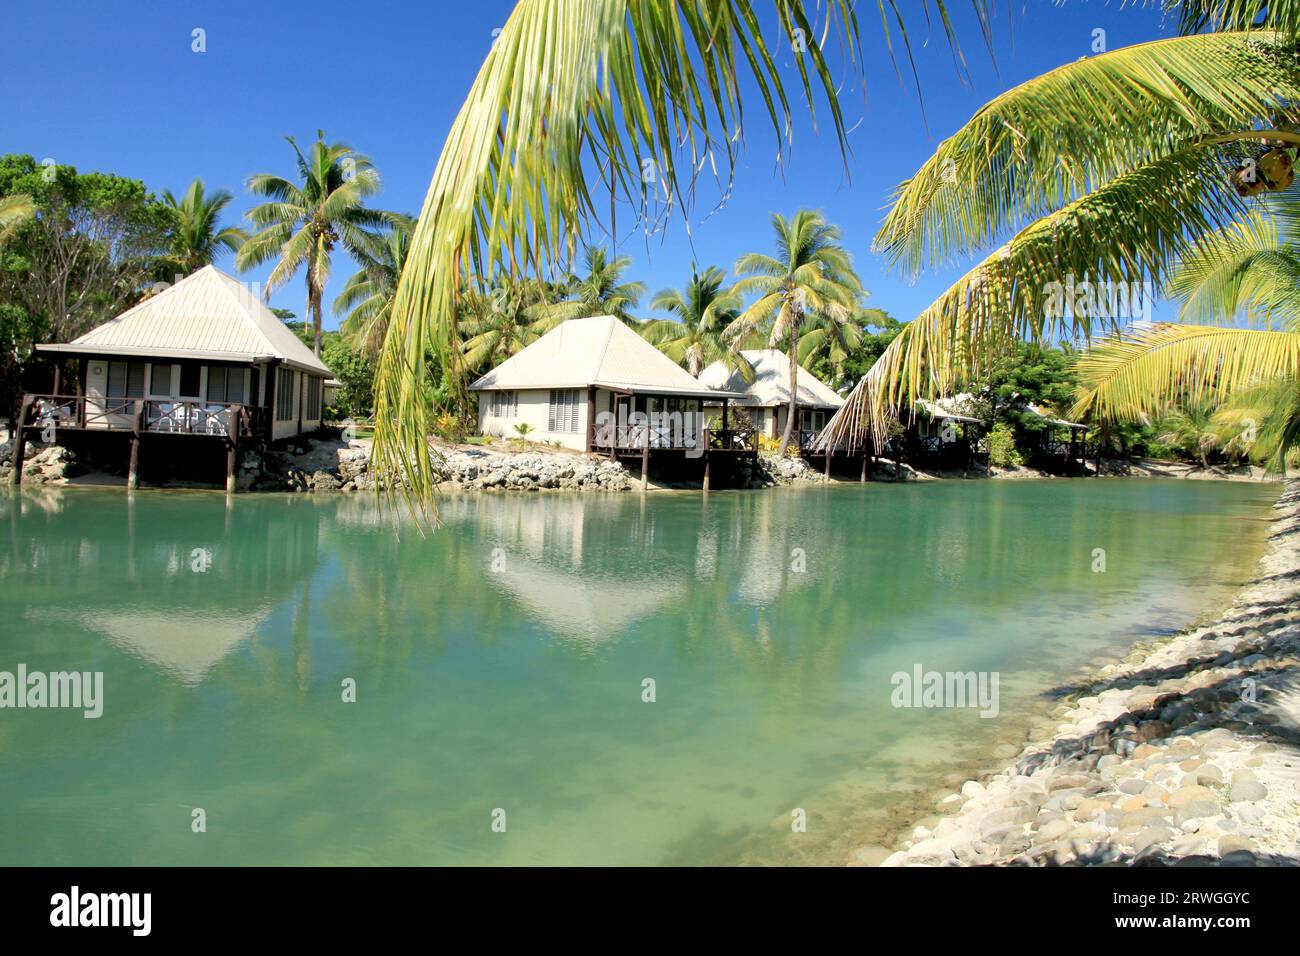 Petites cabanes le long du canal de l'île avec des palmiers Banque D'Images